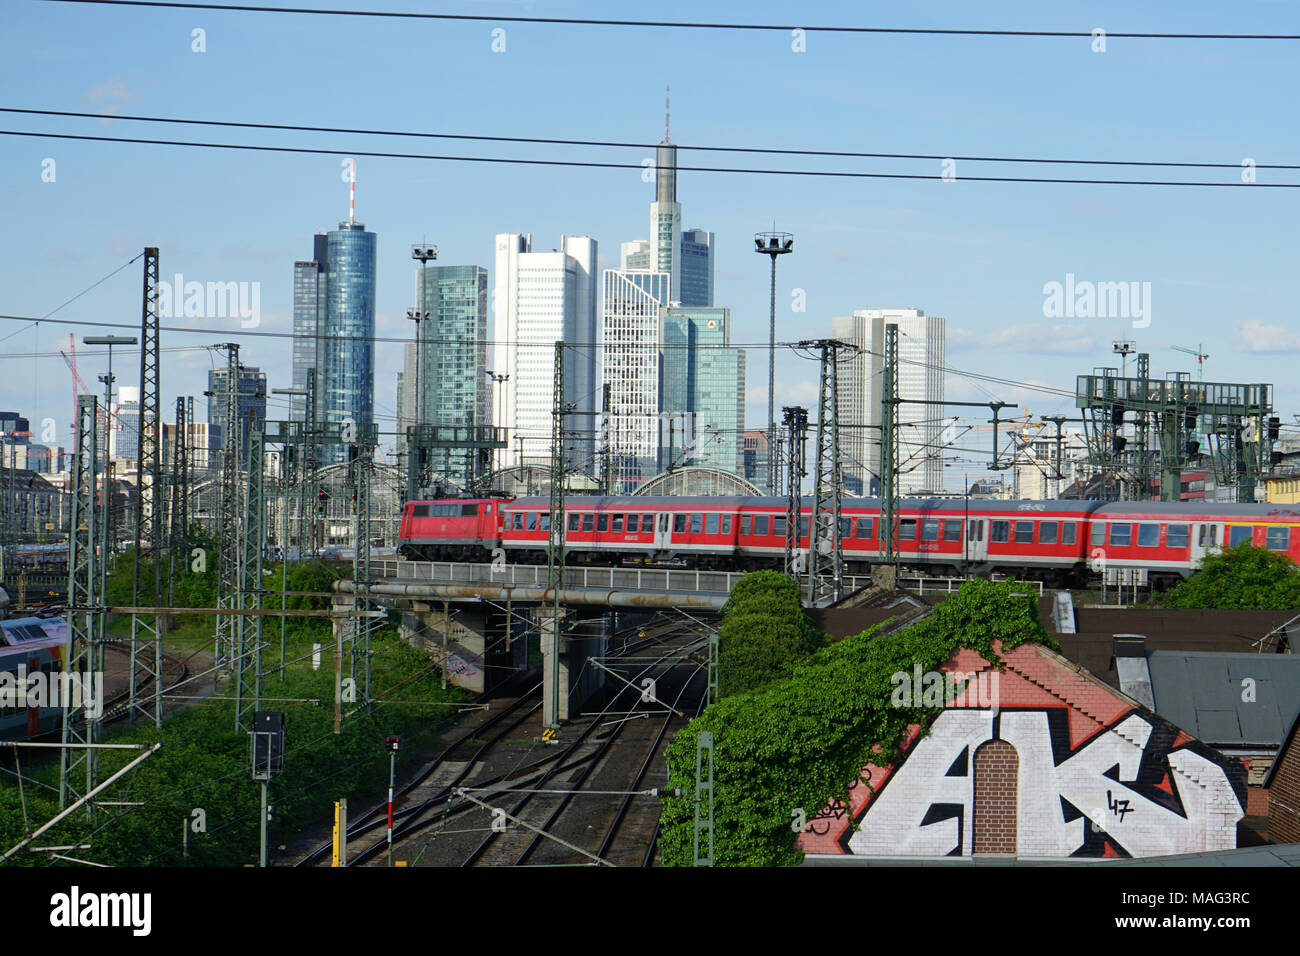 Zug fährt über eine Brücke, Gleise zum Frankfurter Hauptbahnhof, Skyline, Frankfurt, Deutschland, Europa Banque D'Images